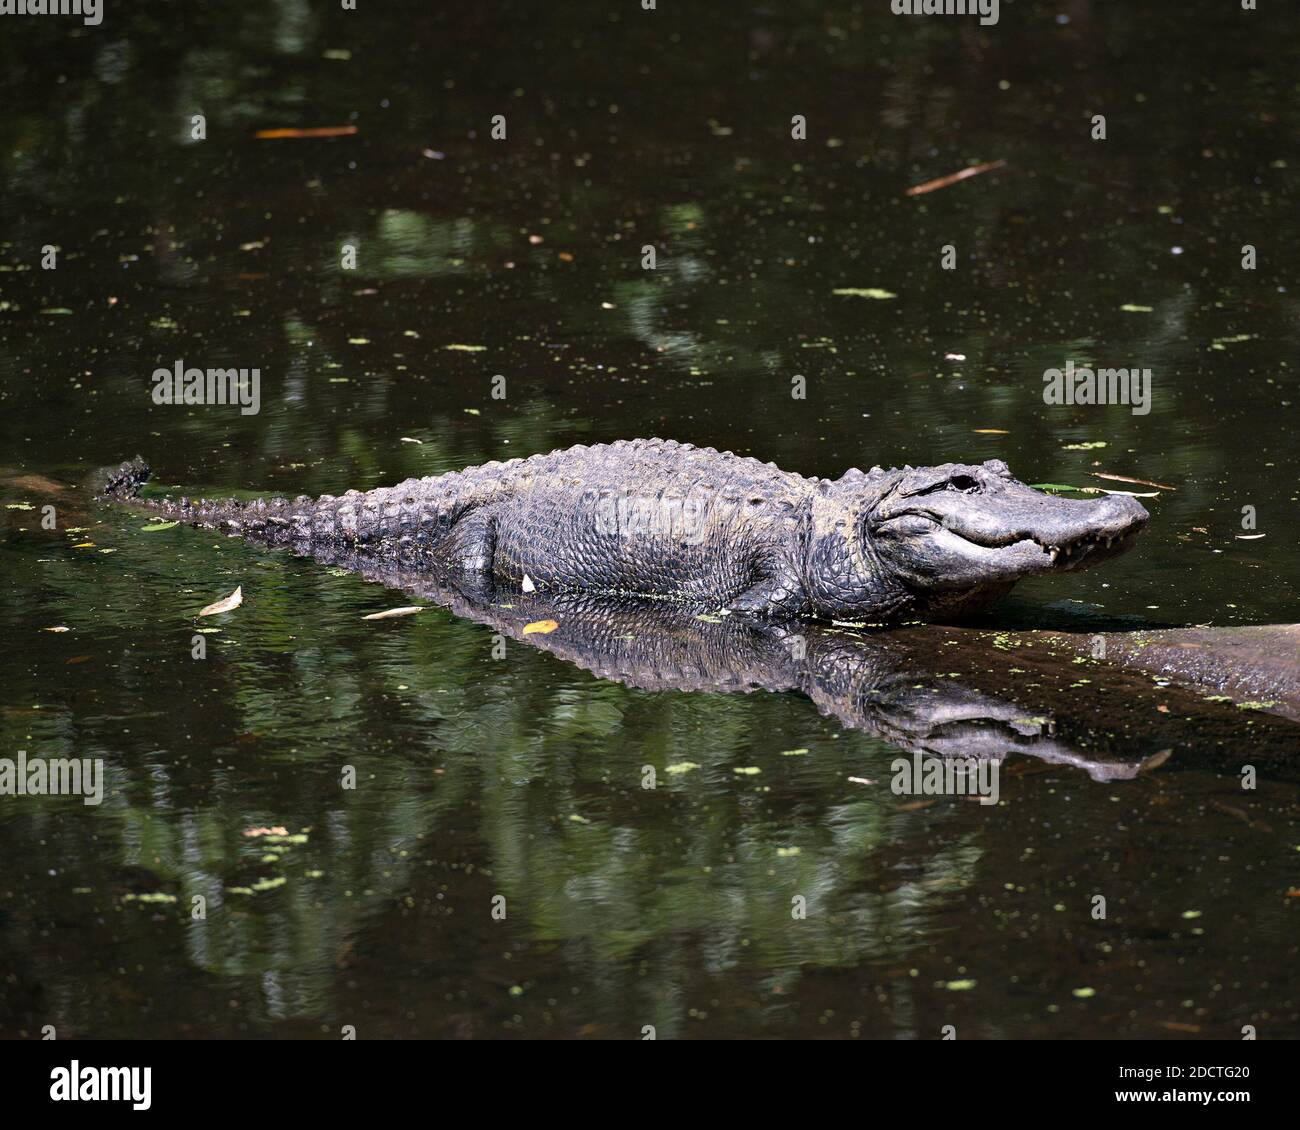 Vista ravvicinata del profilo dell'alligatore nell'acqua crogiolandosi alla luce del sole con un riflesso del corpo nell'acqua che mostra la testa, l'occhio, nel suo ambiente Foto Stock